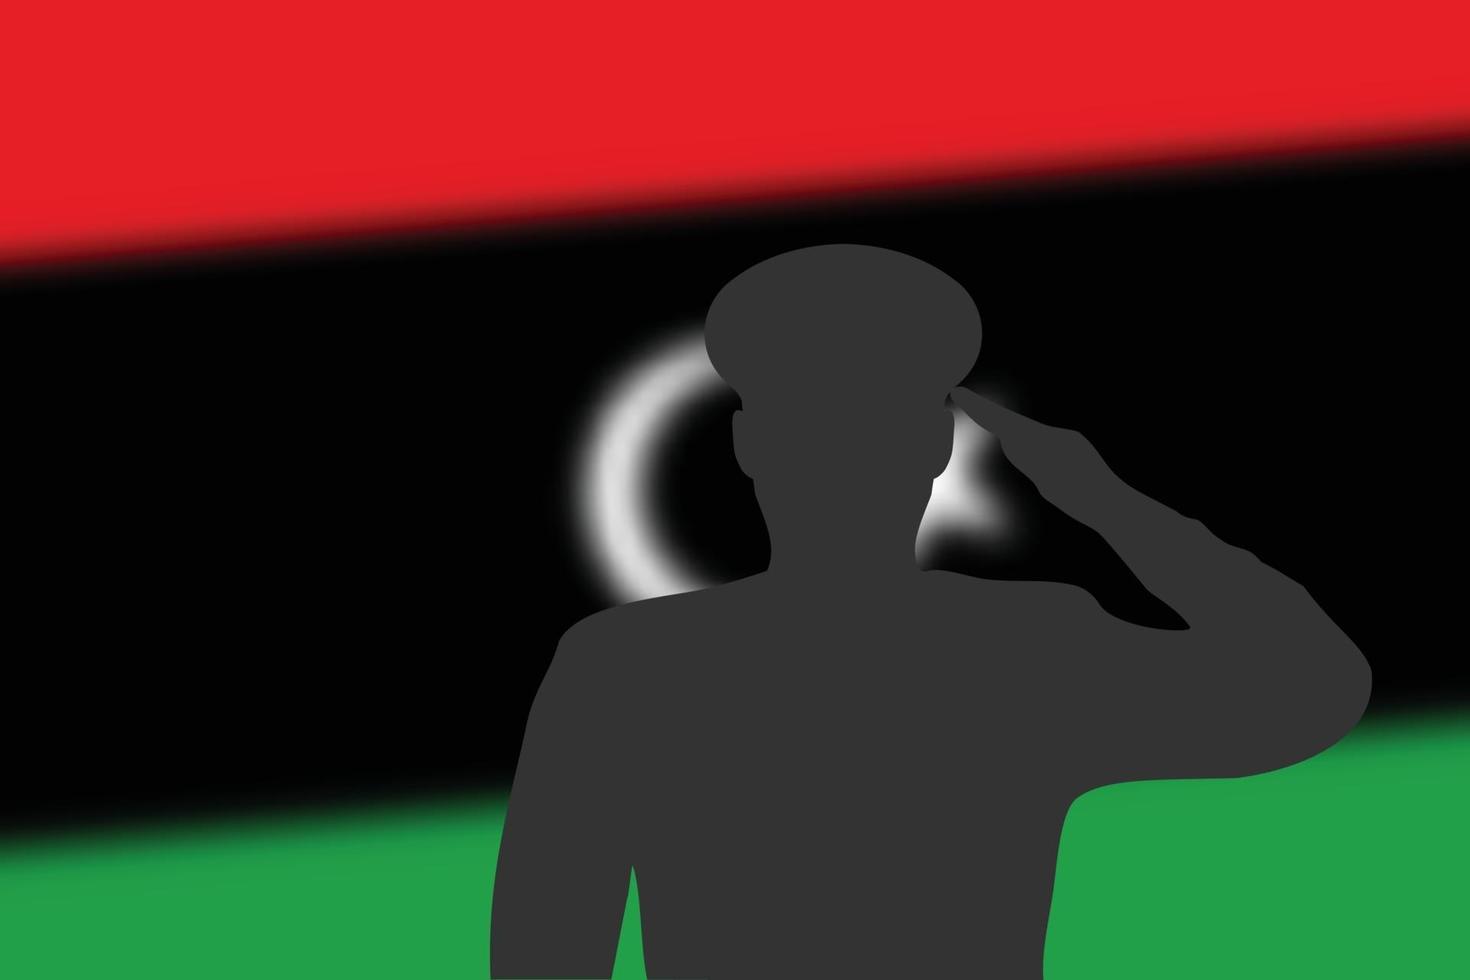 lödsilhuett på suddig bakgrund med libyaflagg. vektor